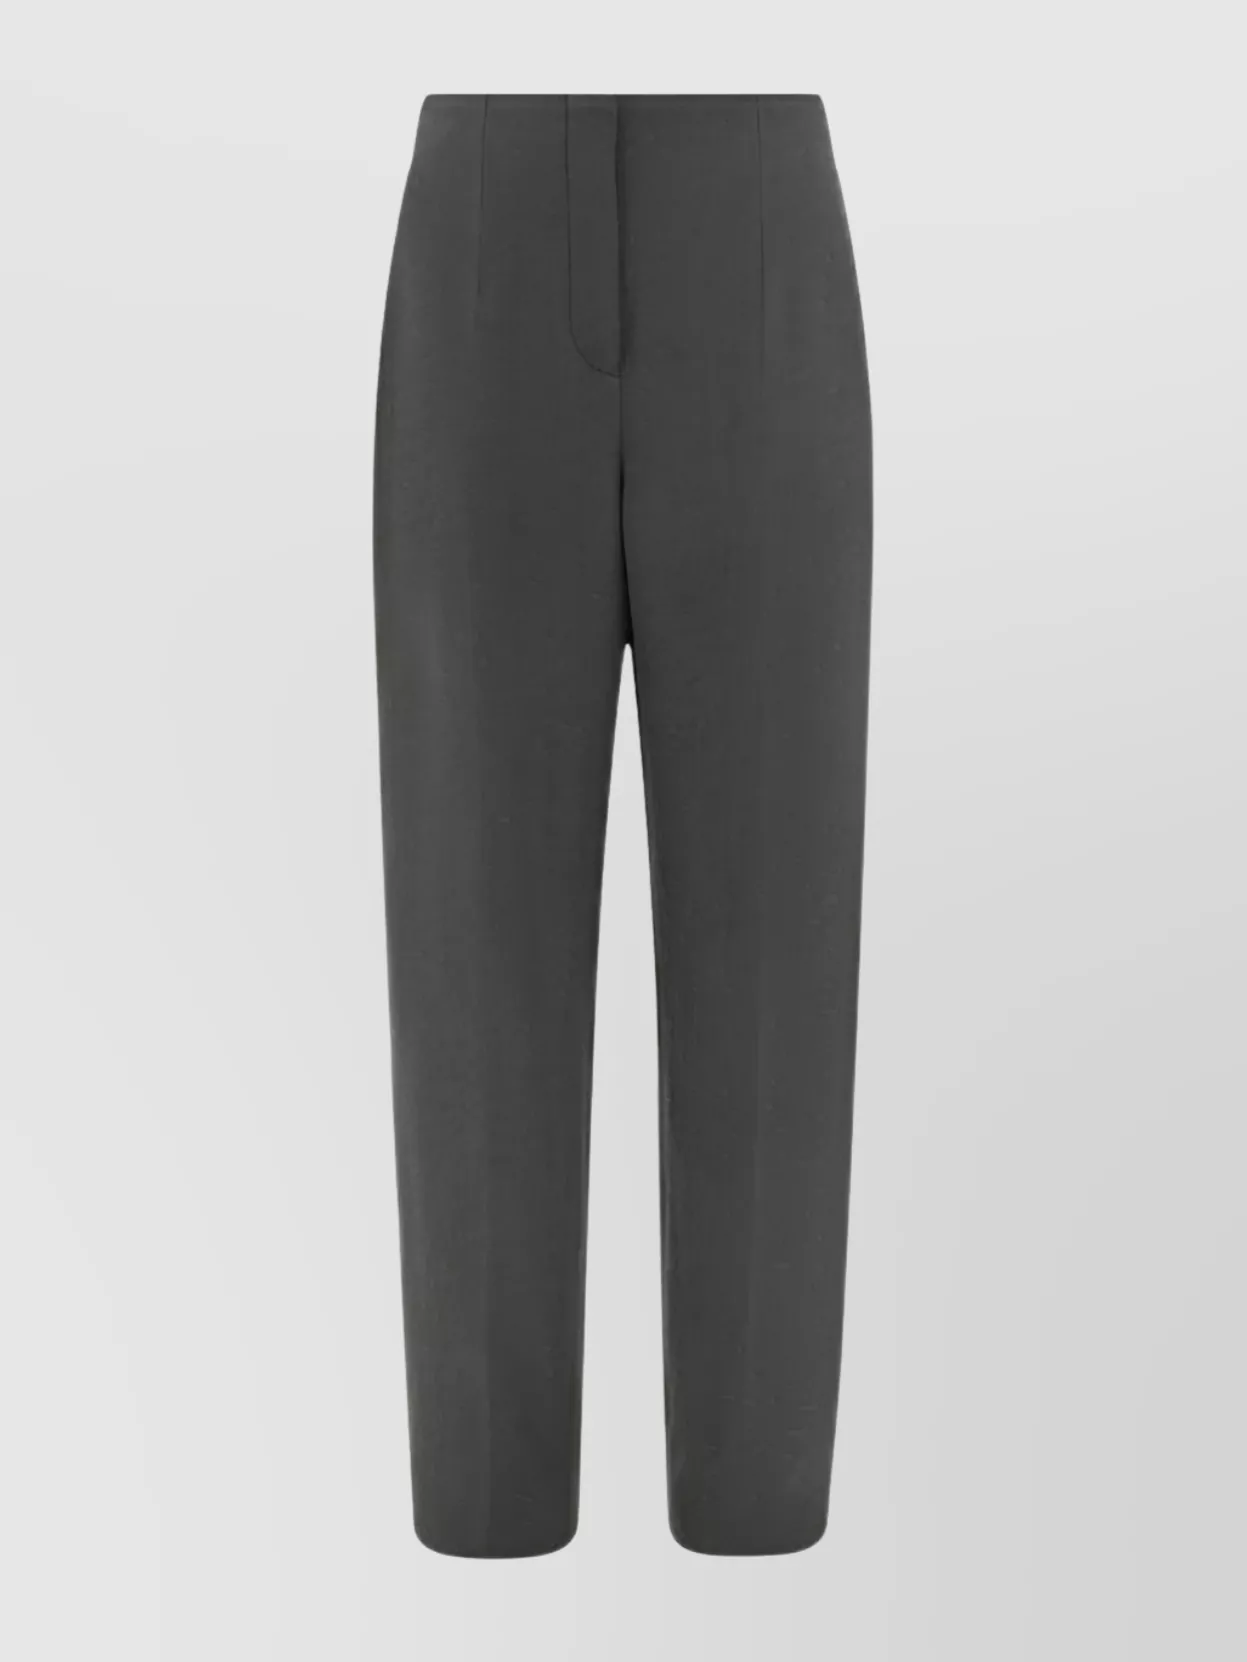 Giorgio Armani Monochrome Pattern Straight Leg Trousers In Gray